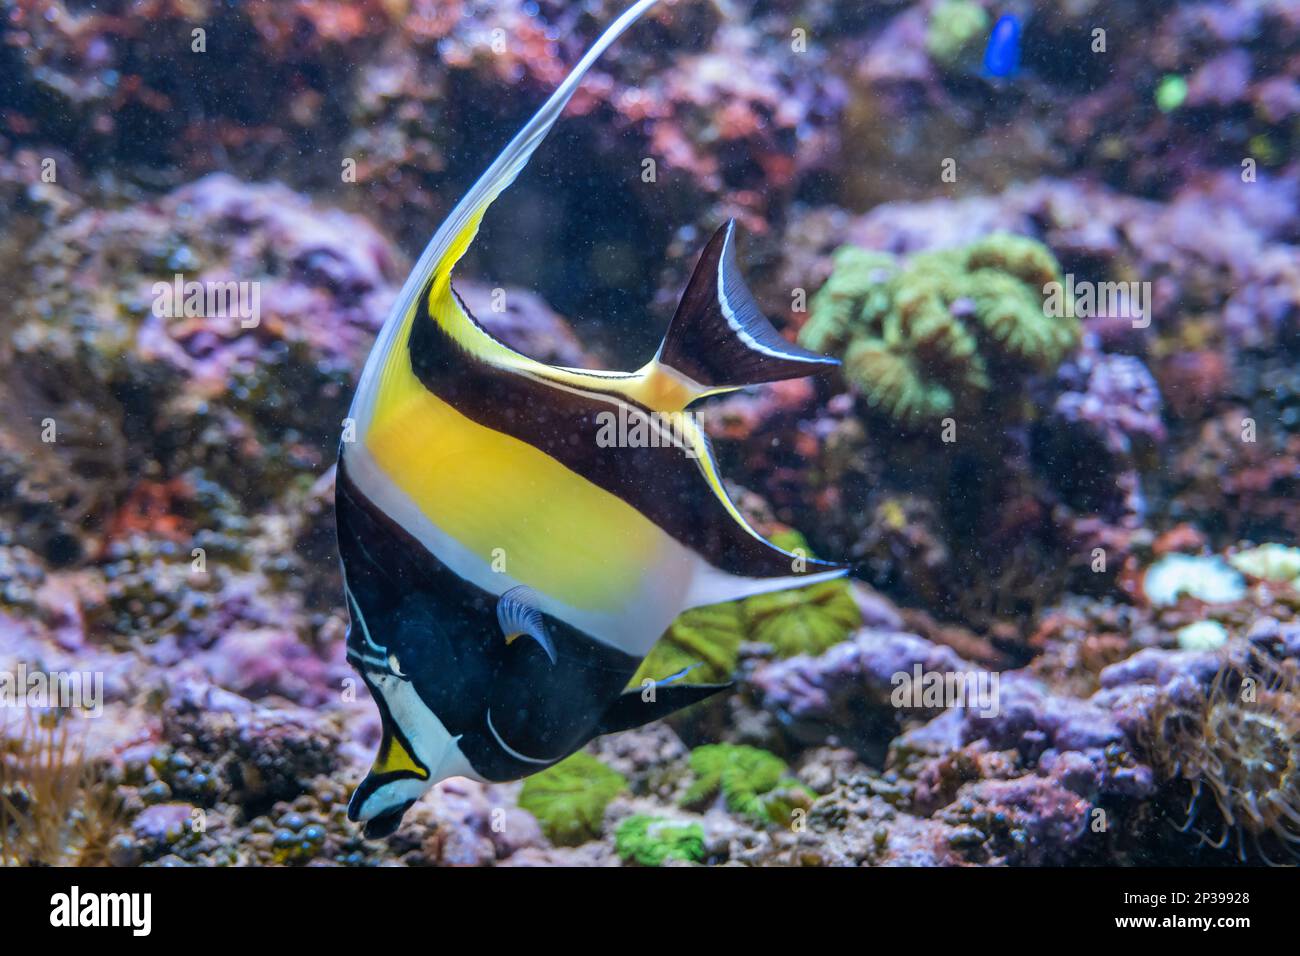 El ídolo morisco (Zanclus cornutus) peces marinos de la familia Zanclidae, habitante de arrecifes tropicales a subtropicales y lagunas de la región Indo-Pacífico Foto de stock